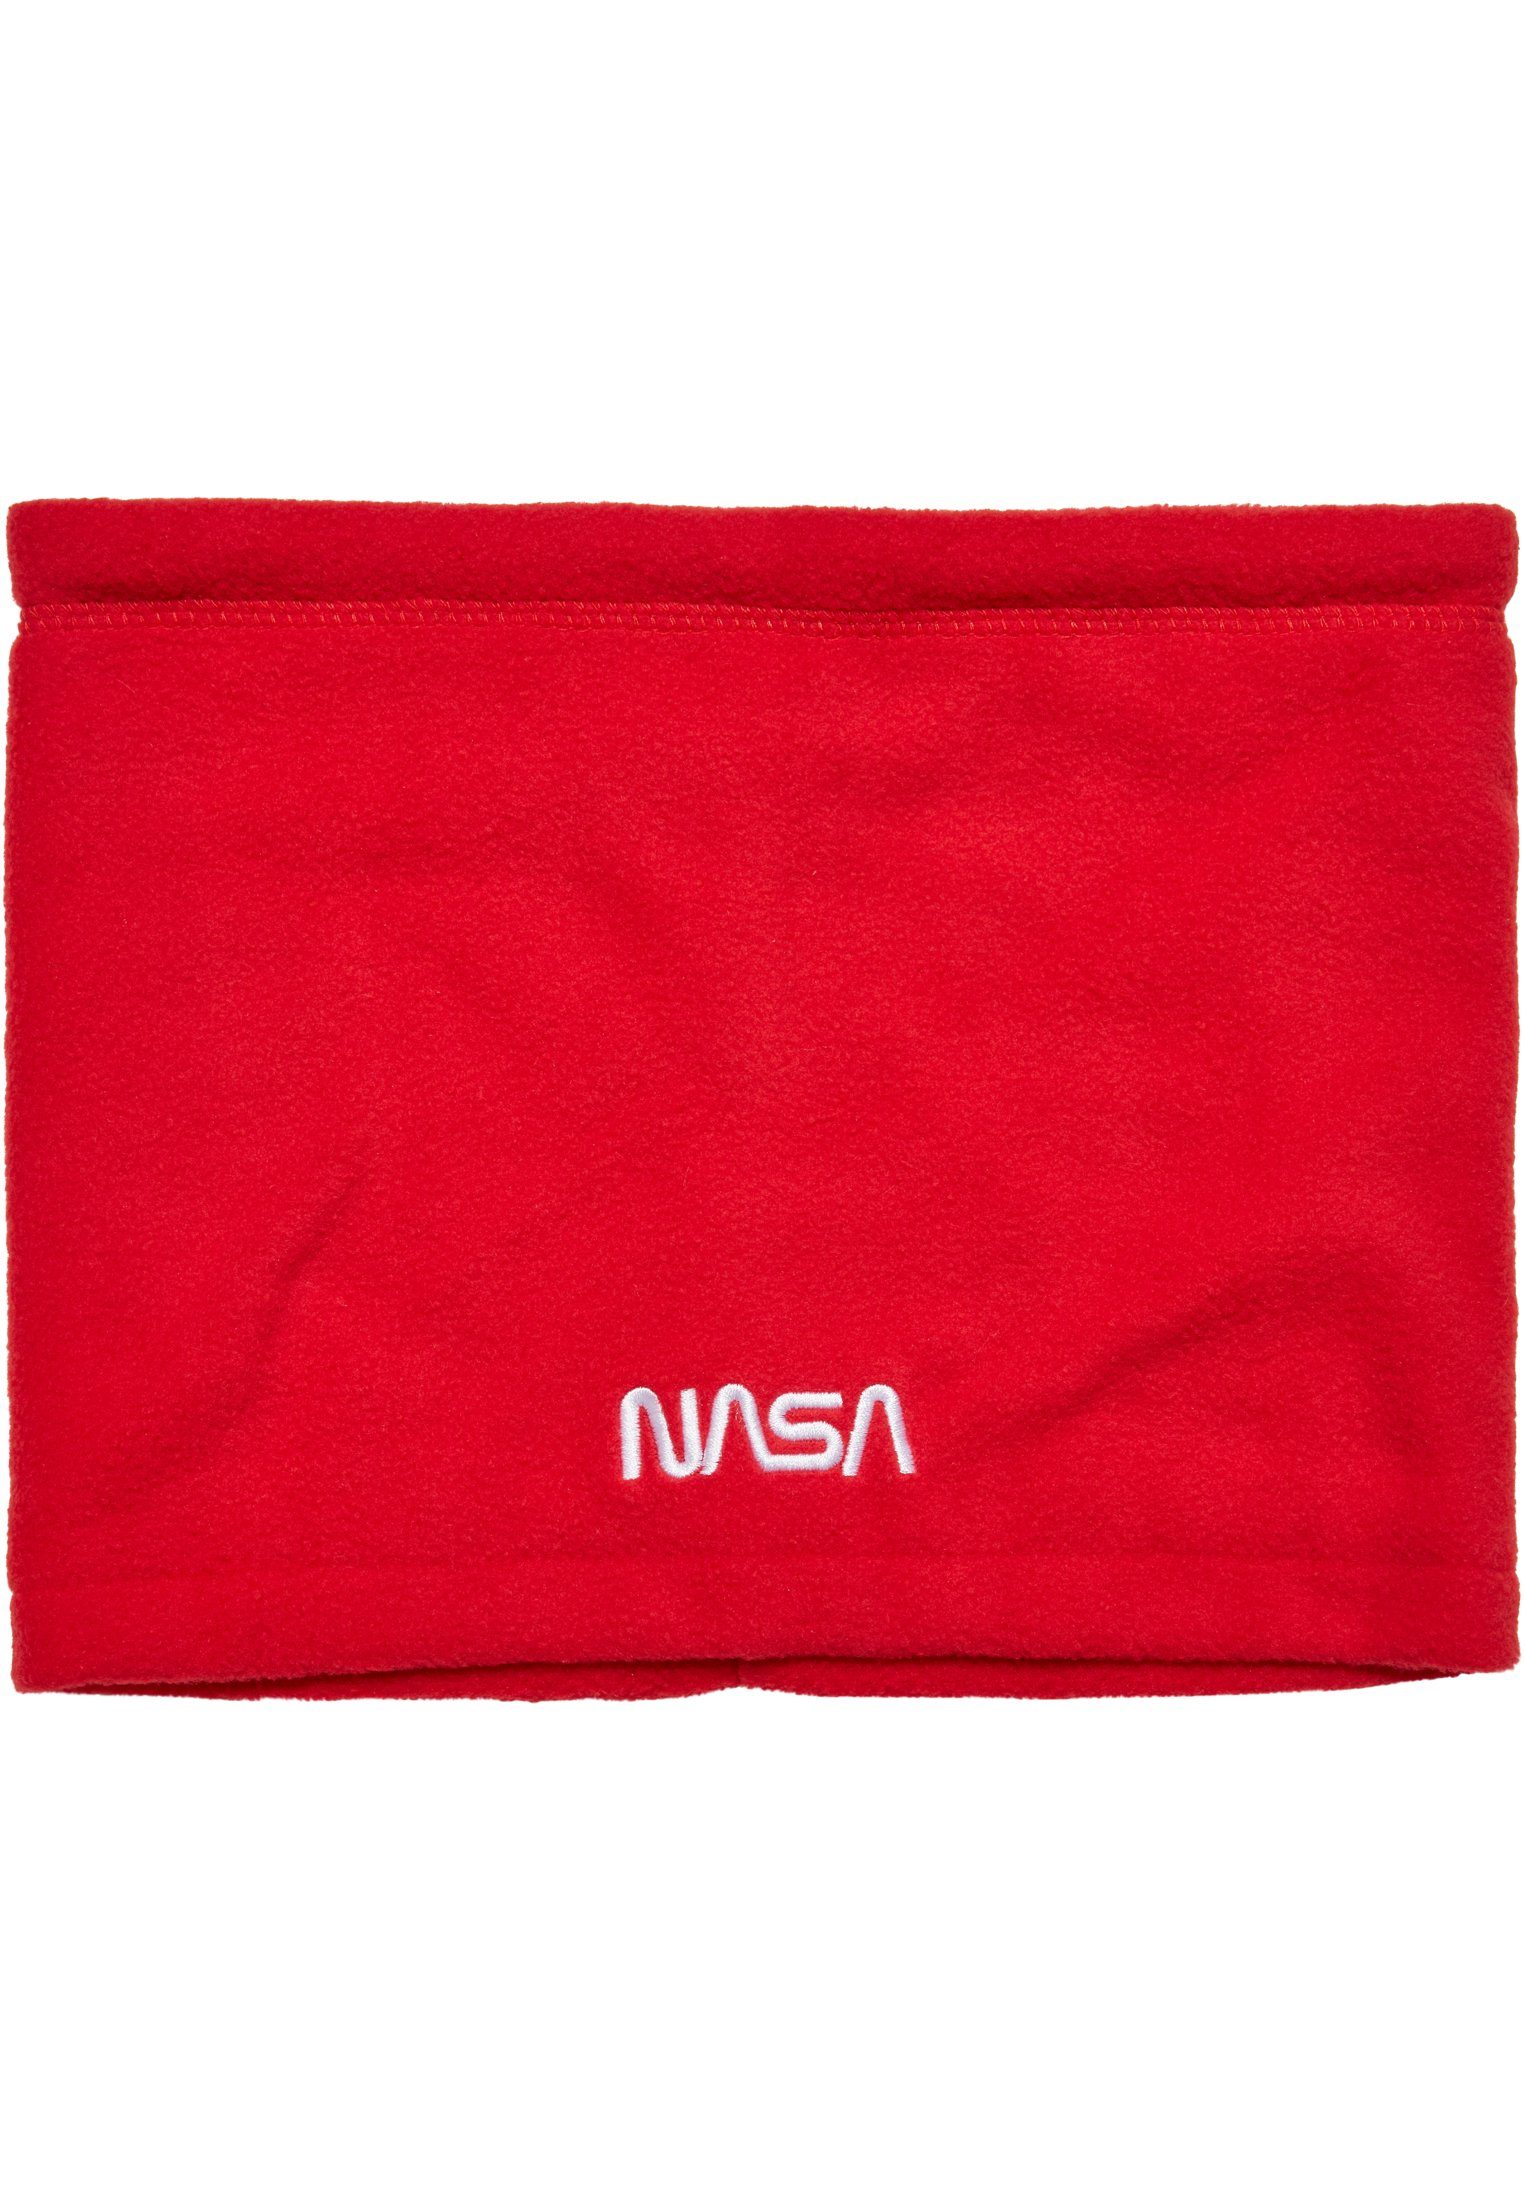 Fleece Accessoires NASA red MisterTee Baumwollhandschuhe Set